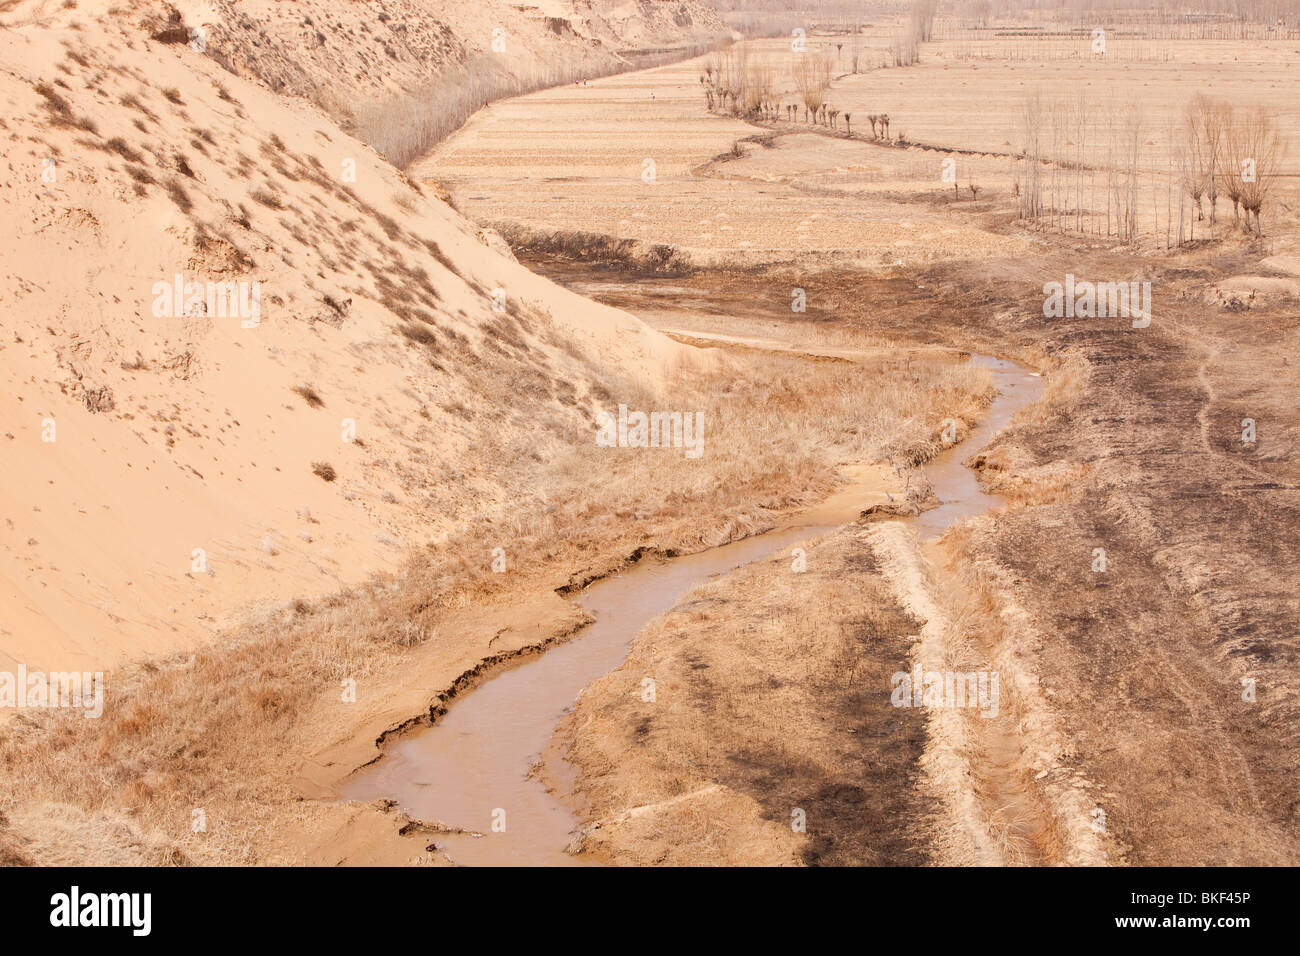 Wüstenbildung und Dürre Bedingungen in der Provinz Shanxi in China. Stockfoto